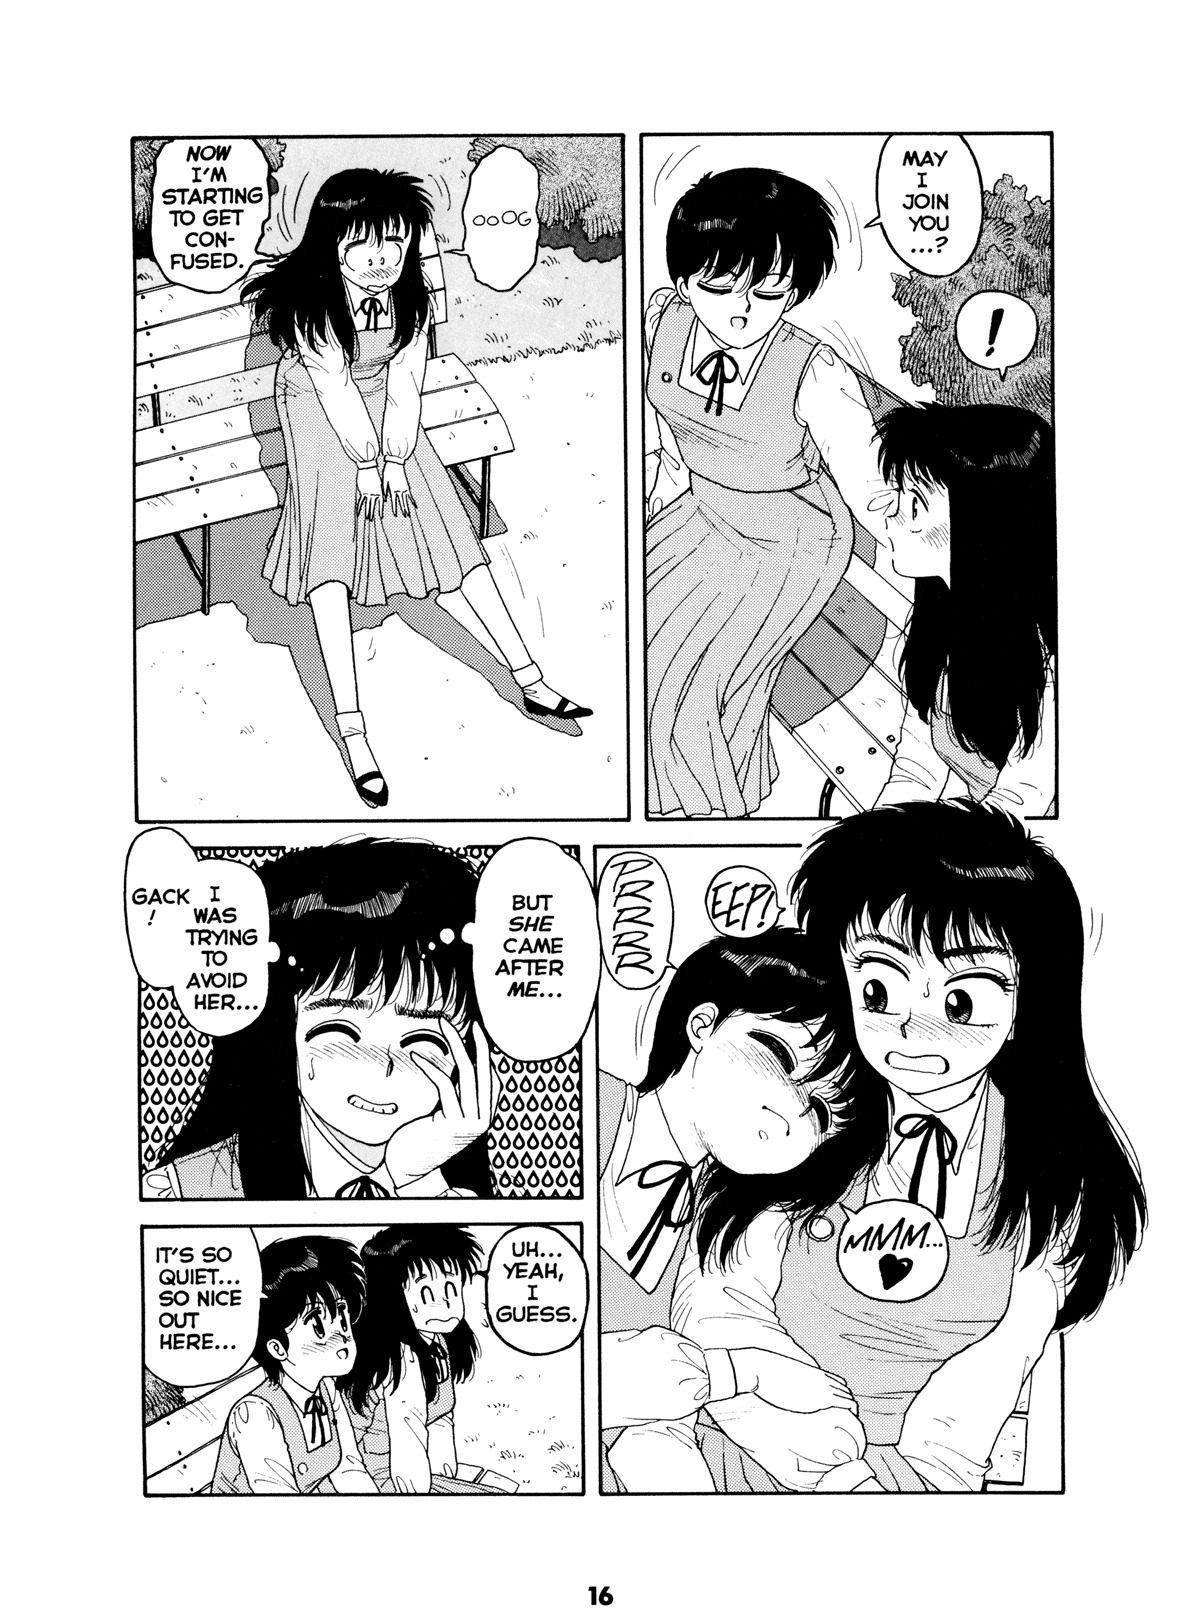 Misty Girl Extreme 15 hentai manga